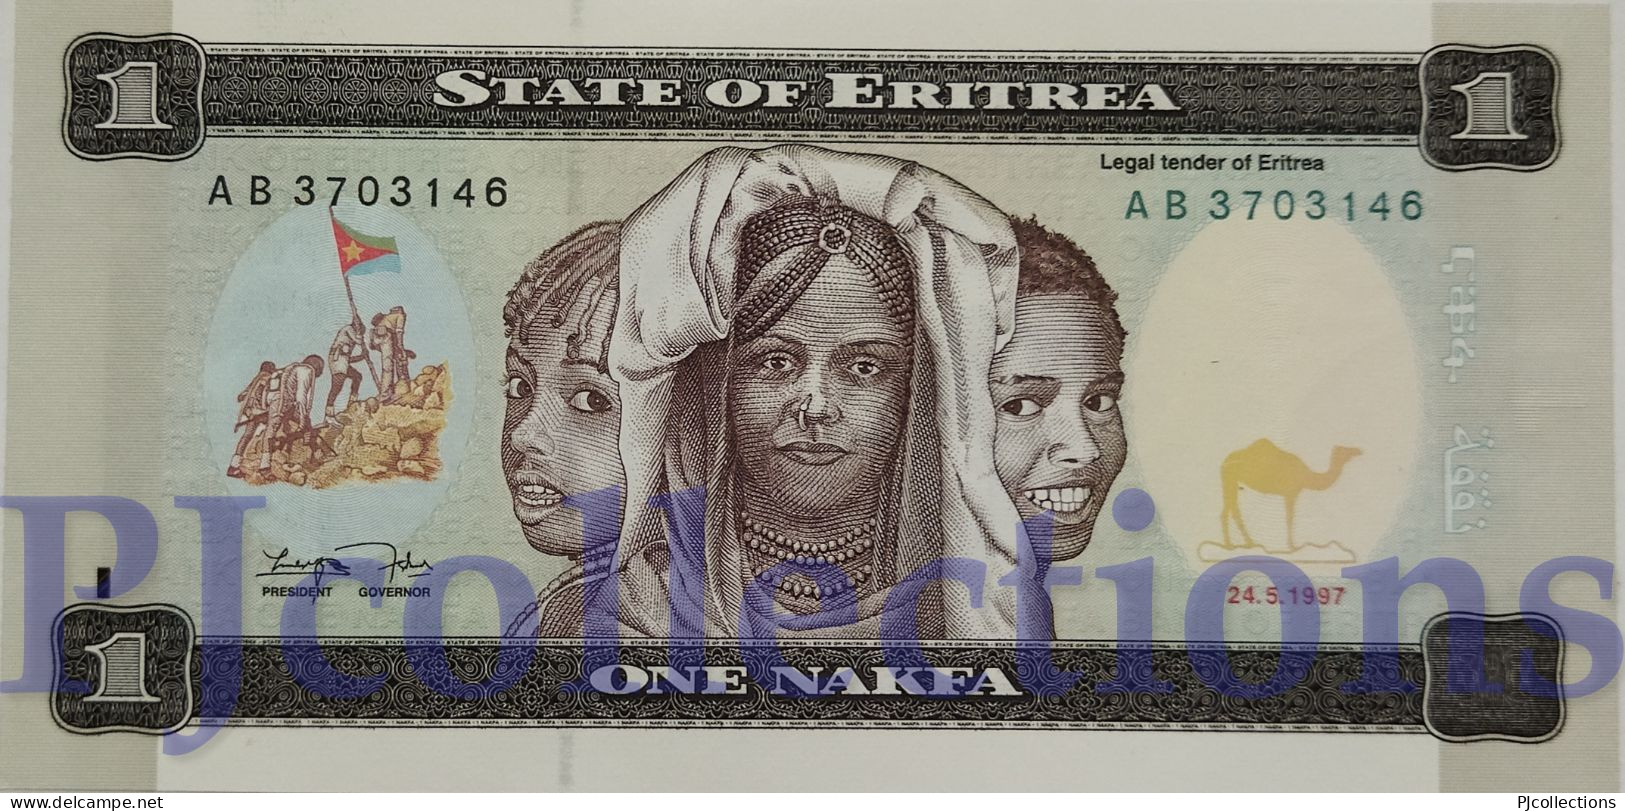 LOT ERITREA 1 NAKFA 1997 PICK 1 UNC X 10 PCS - Eritrea